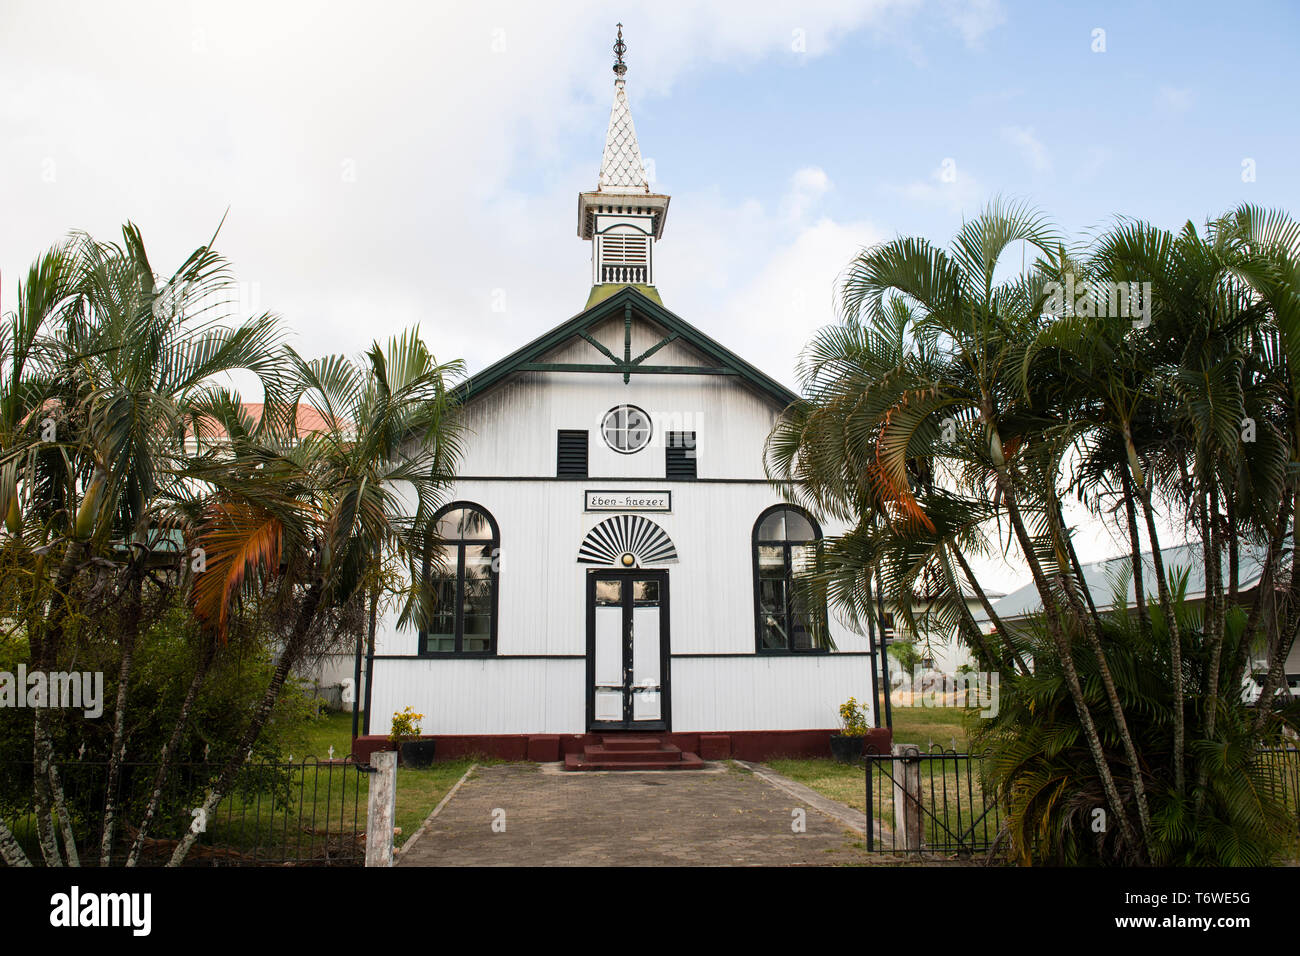 L'architecture en bois, Nieuw-Nickerie, Suriname Banque D'Images